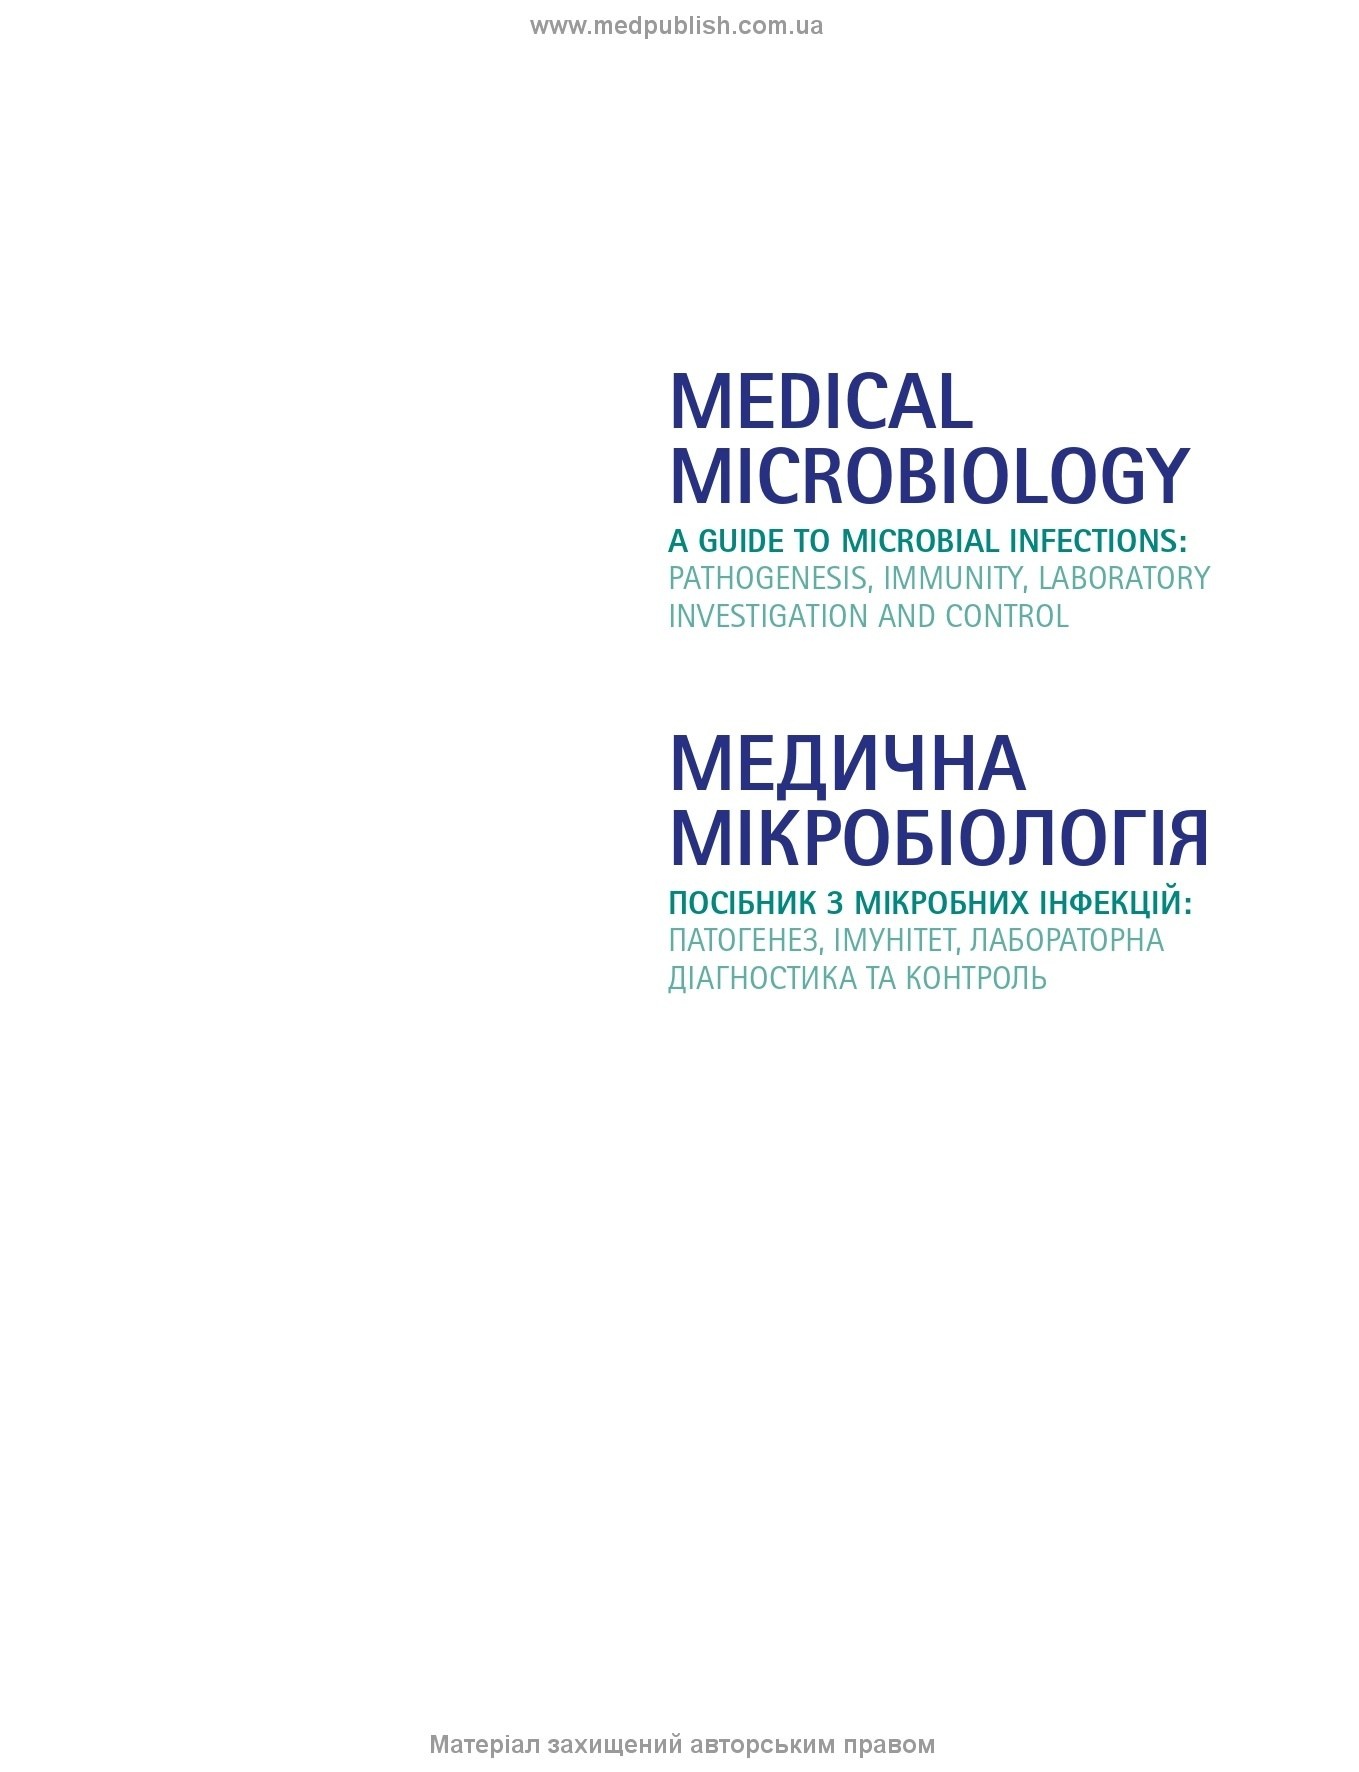 Медична мікробіологія. Посібник з мікробних інфекцій: патогенез, імунітет, лабораторна діагностика та контроль: 19-е видання: у 2 томах. Том 2. . 